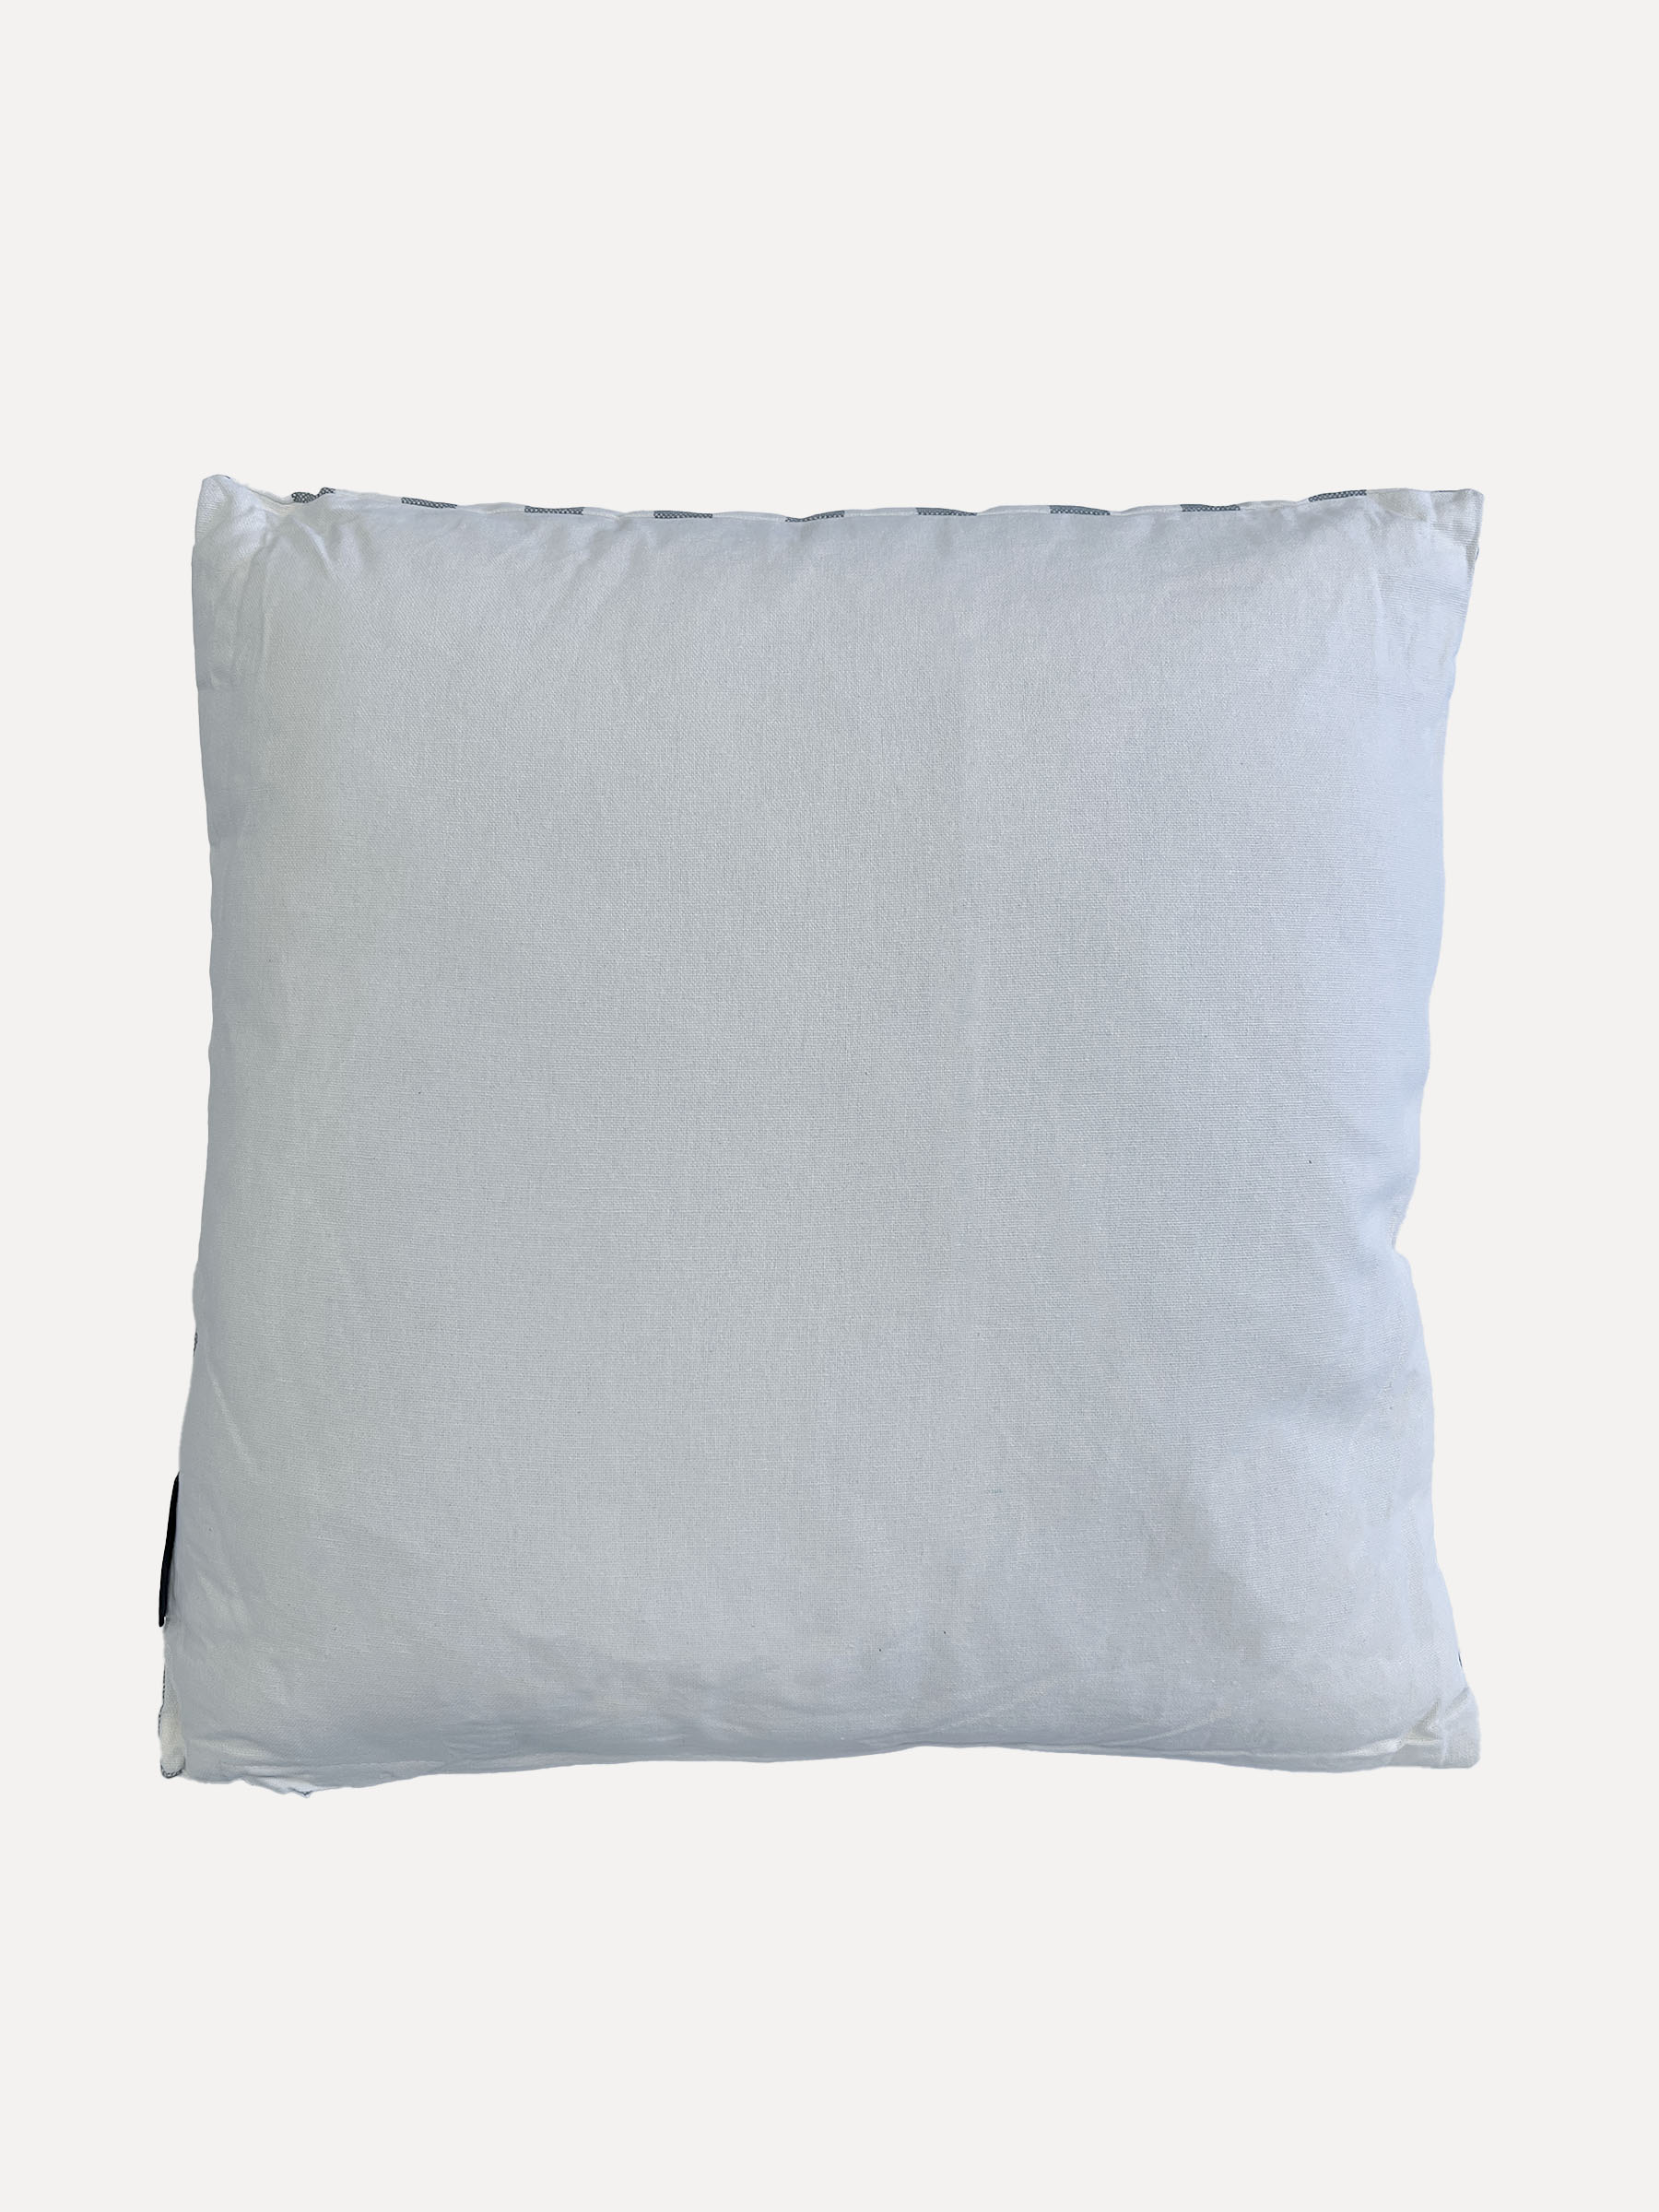 SAINT TROPEZ Pillow